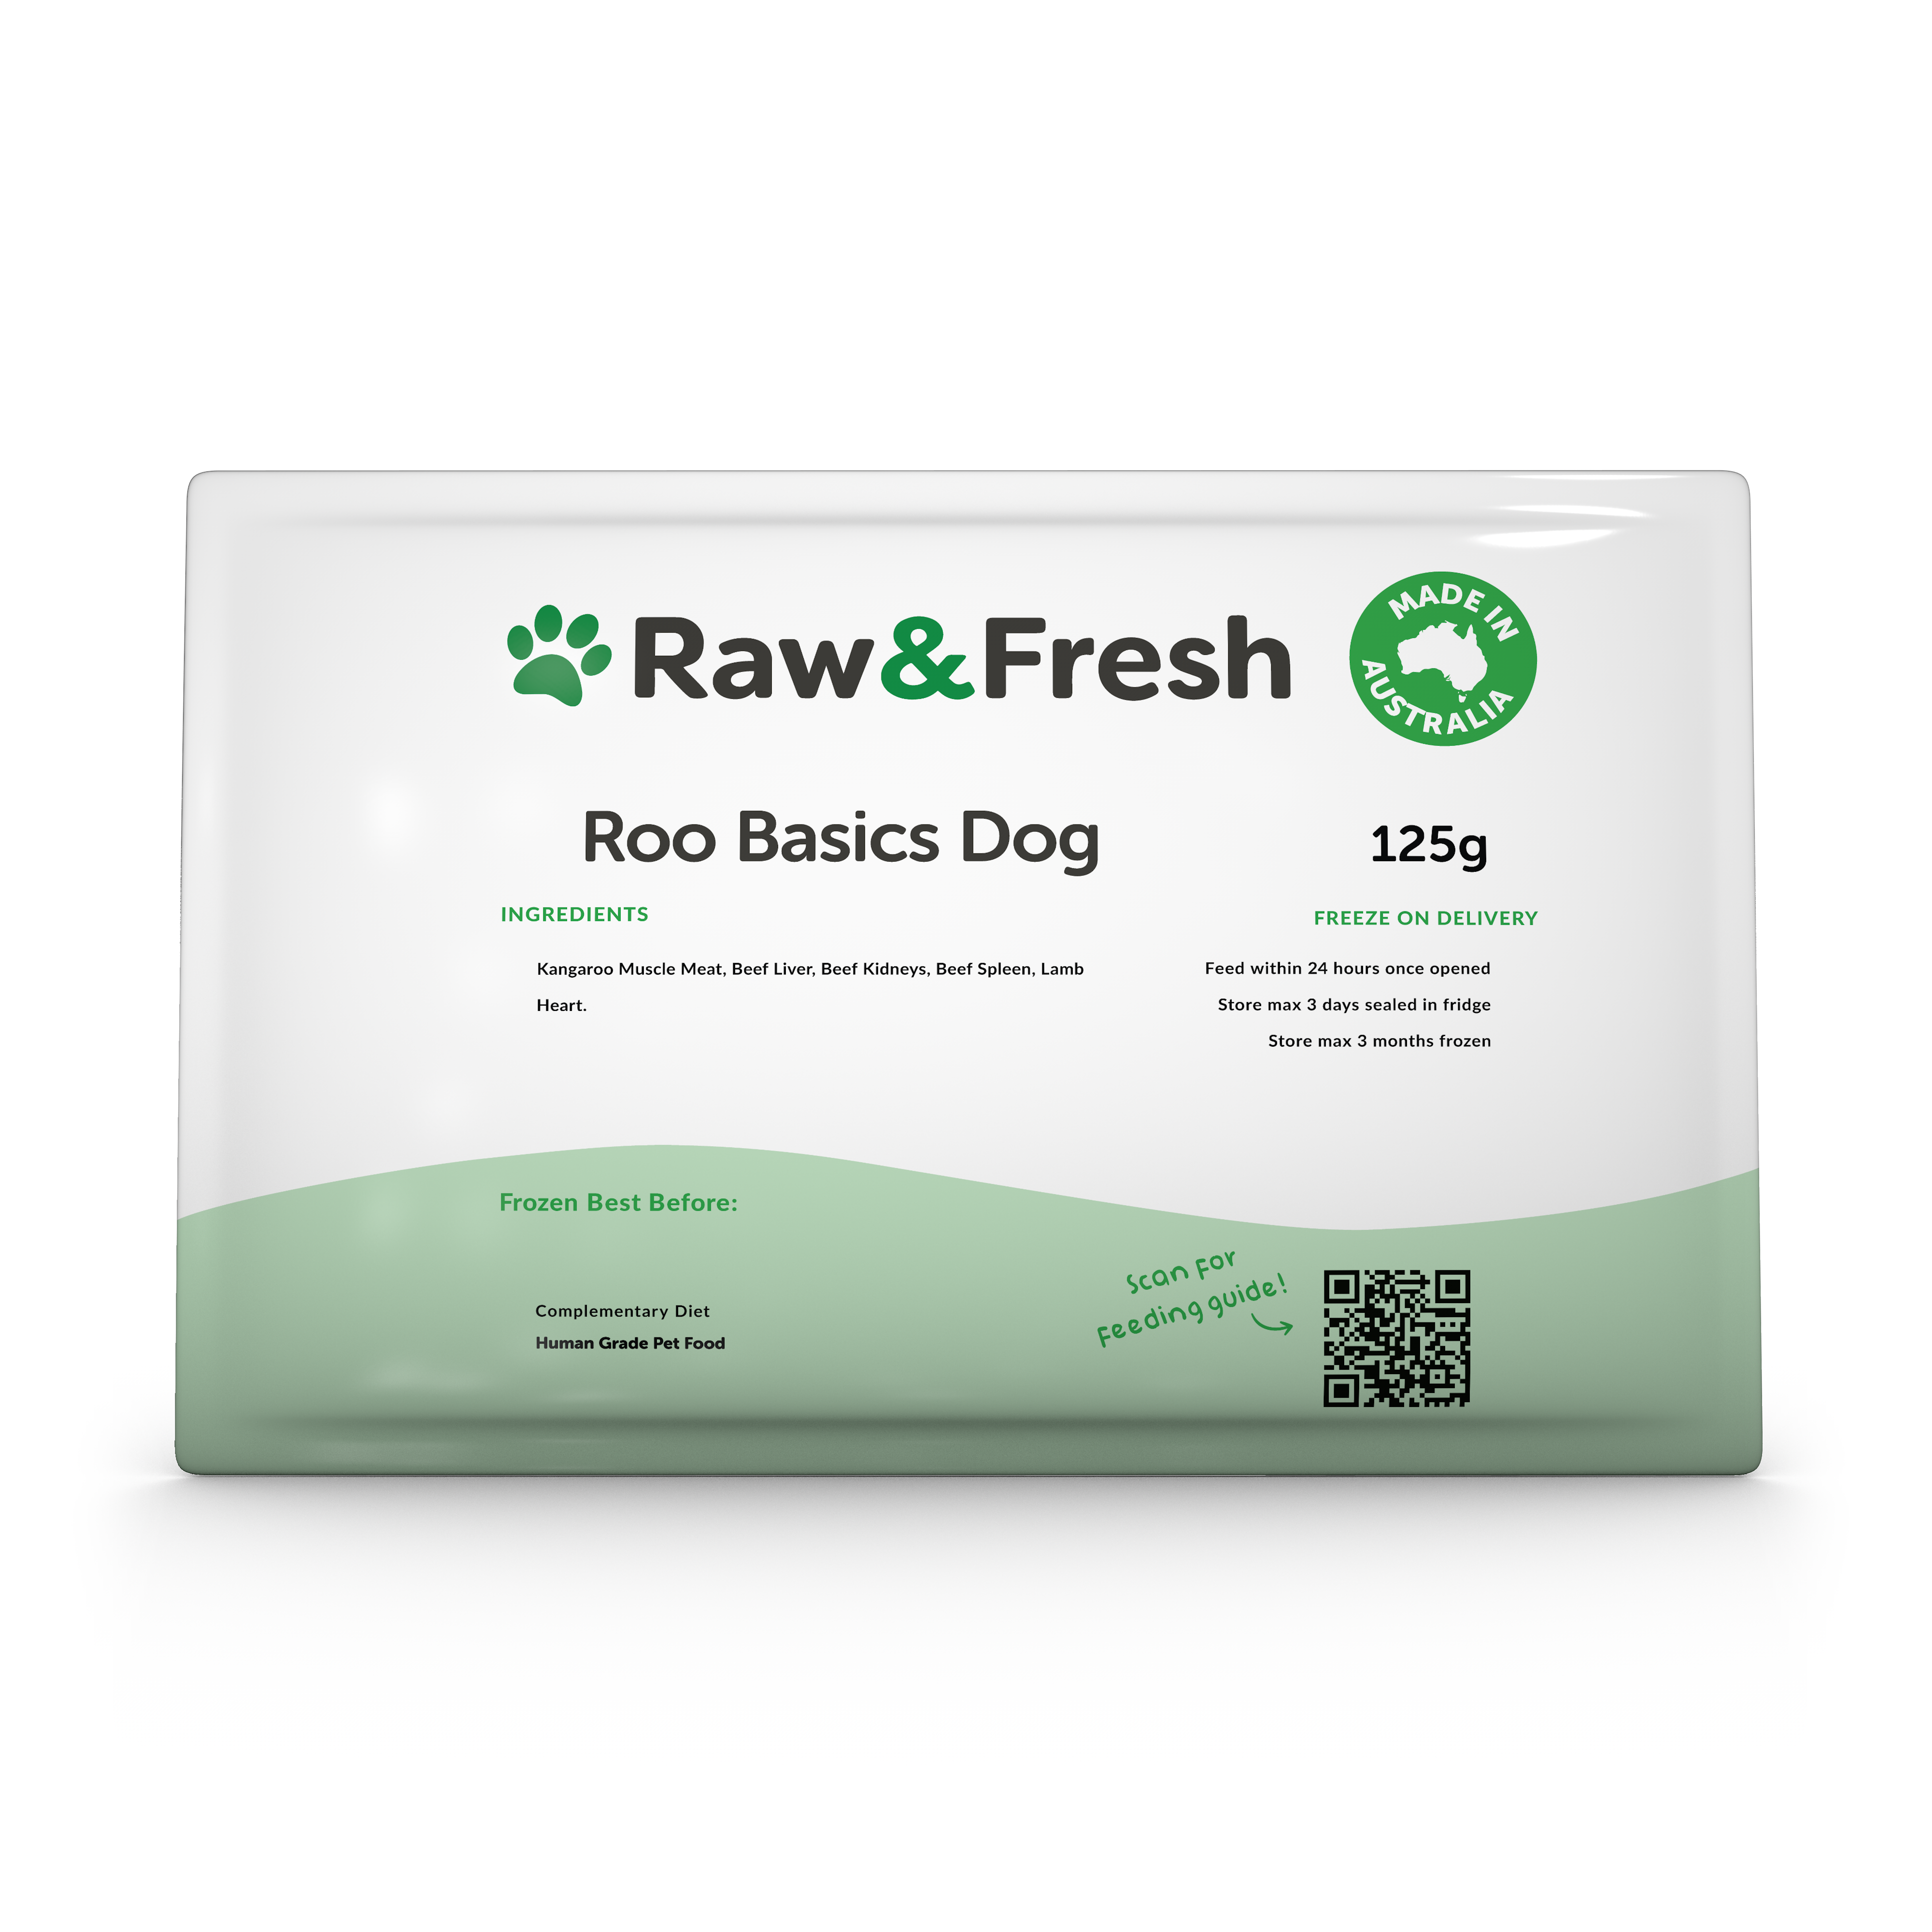 Roo Basics Dog - 125g Pack